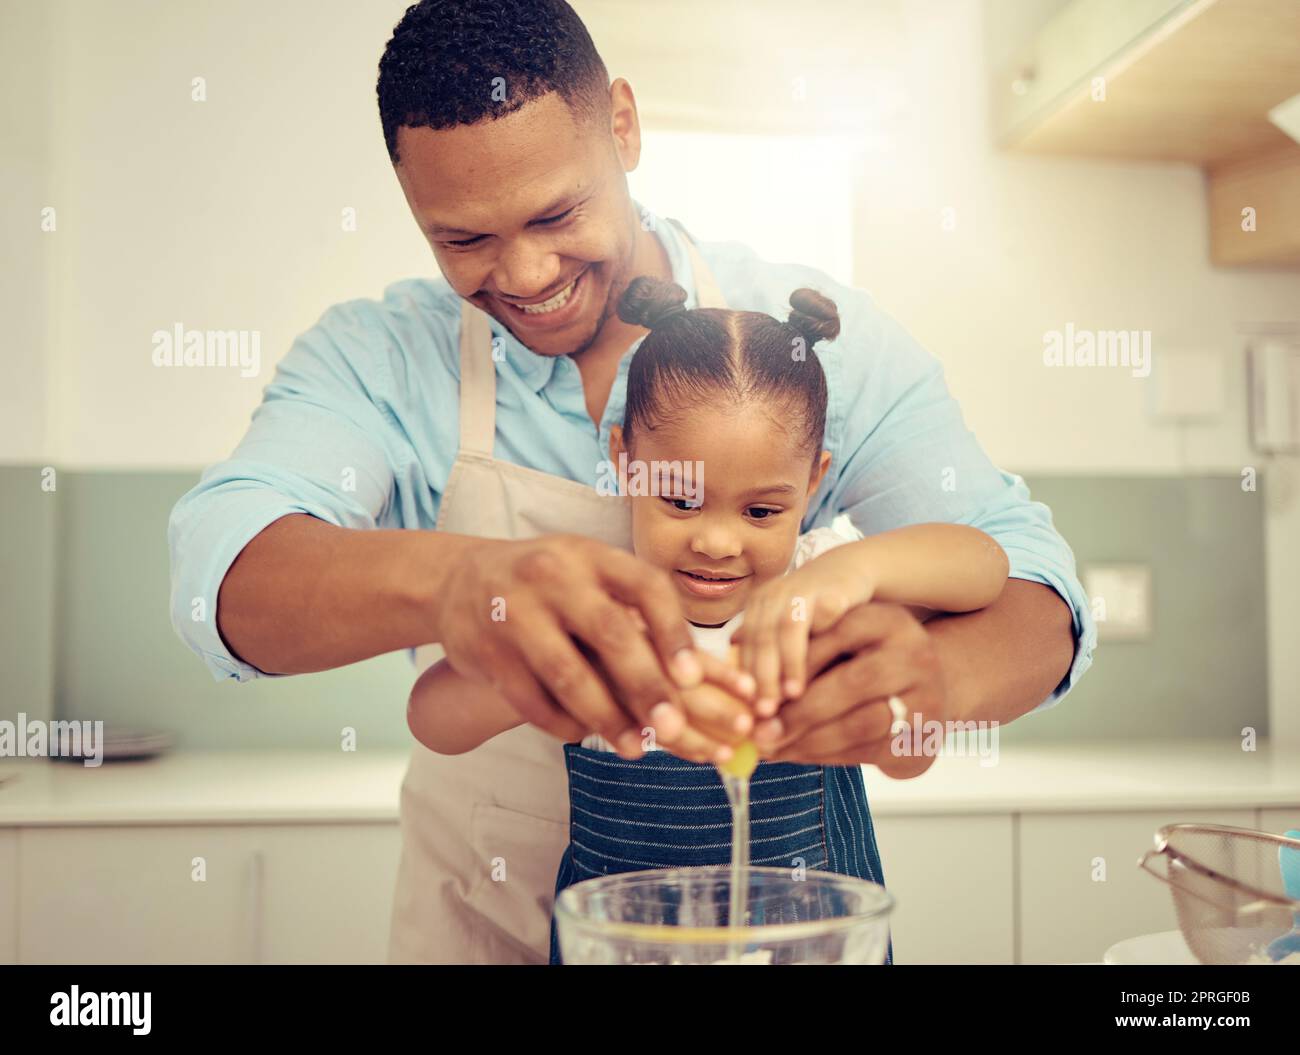 Glücklicher schwarzer Vater und glückliche Tochter, die in einer Küche backen, Spaß haben, verspielt zu sein und sich zu verbinden. Fürsorgliche Eltern, die Kindern Kochkünste und häusliche Fähigkeiten beibringen, bereiten gemeinsam einen gesunden, leckeren Snack oder eine Mahlzeit zu Stockfoto